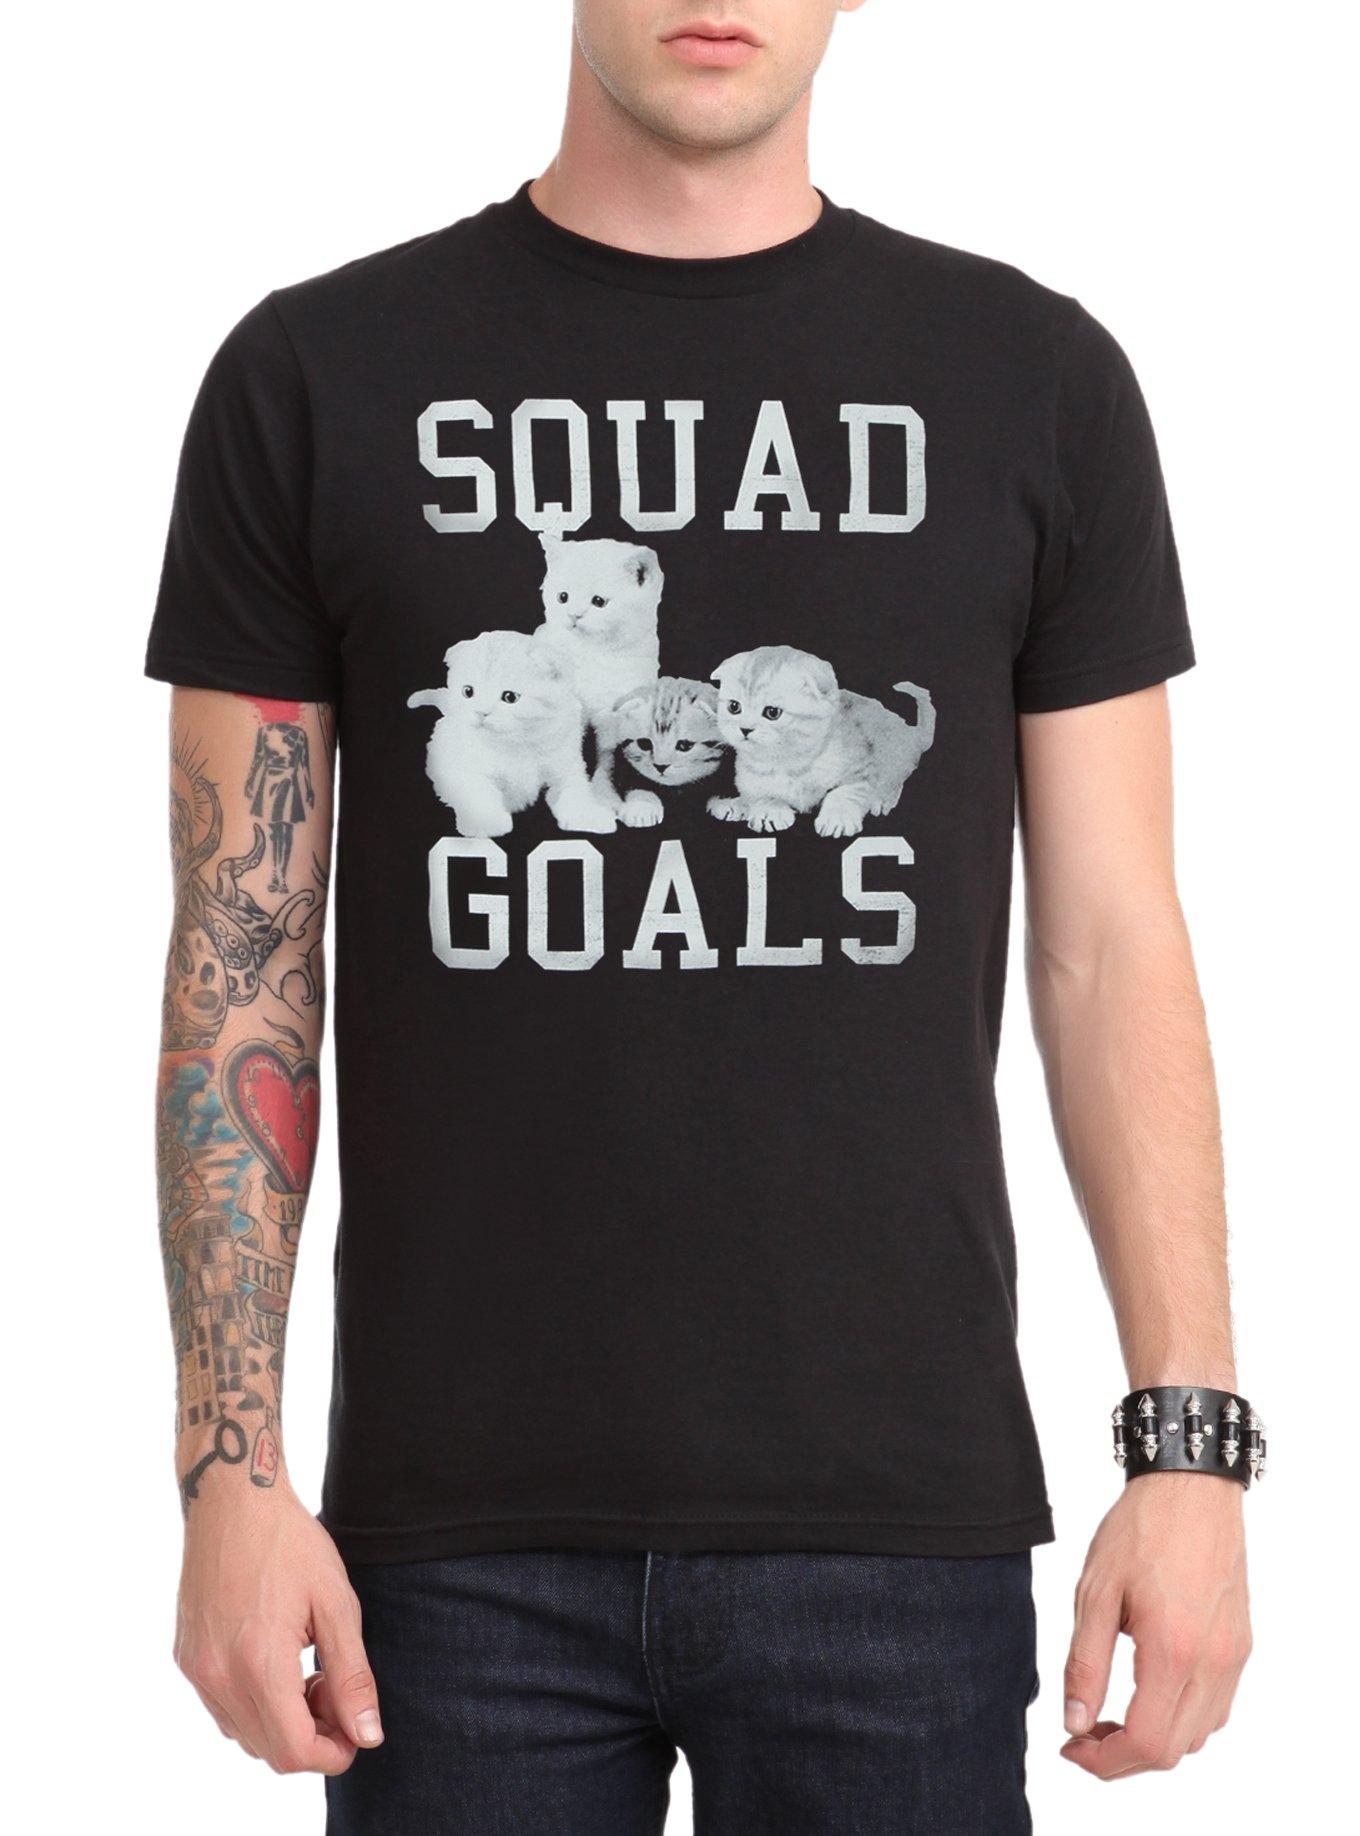 Squad Goals Kittens T-Shirt, BLACK, hi-res